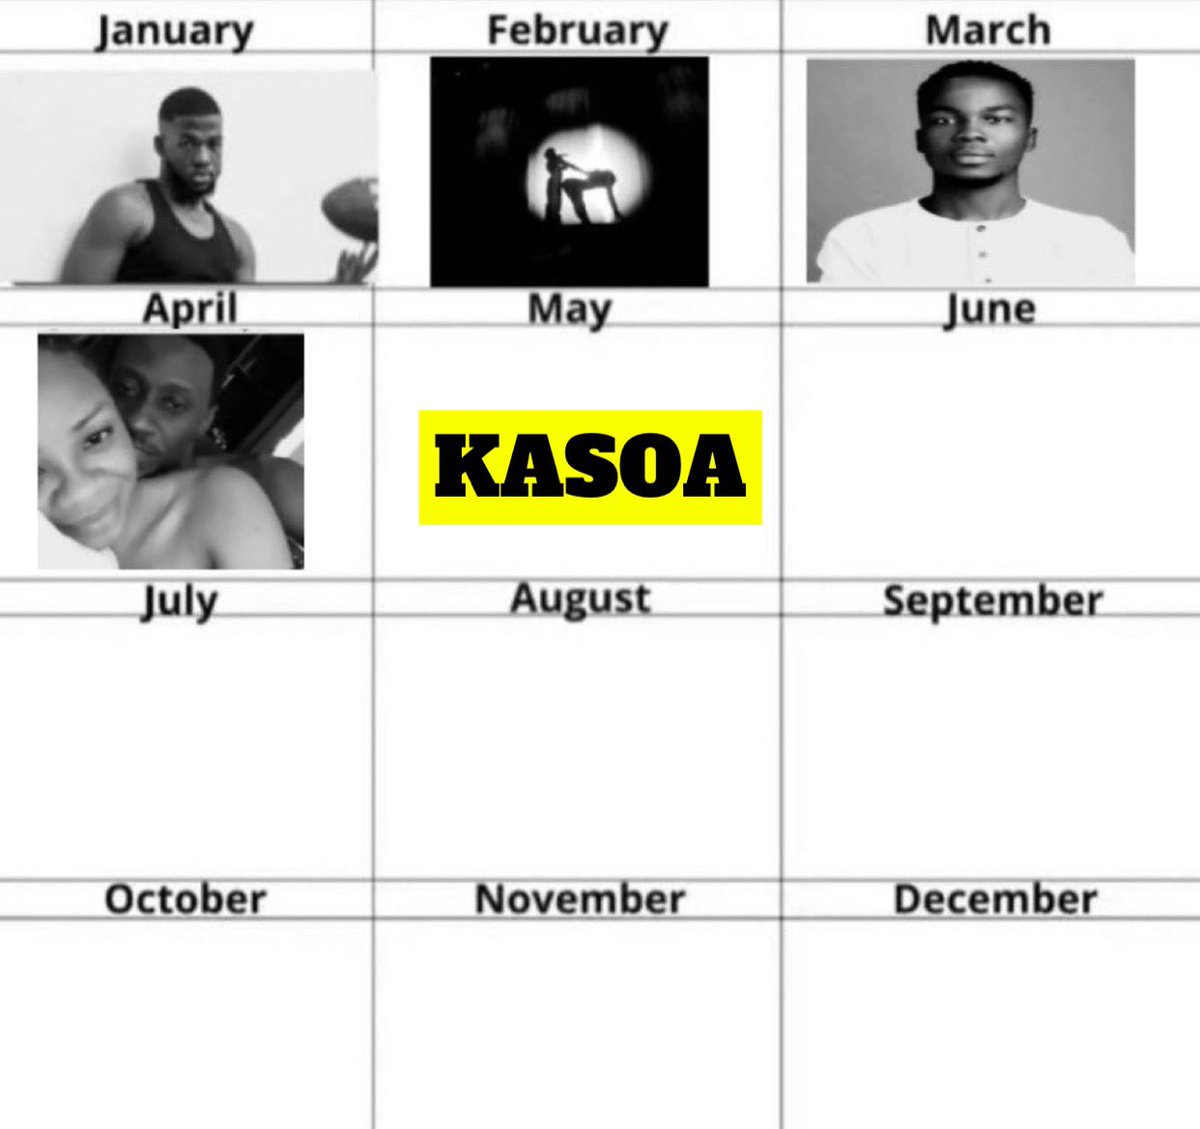 Kasoa occupy May already, hasty oo